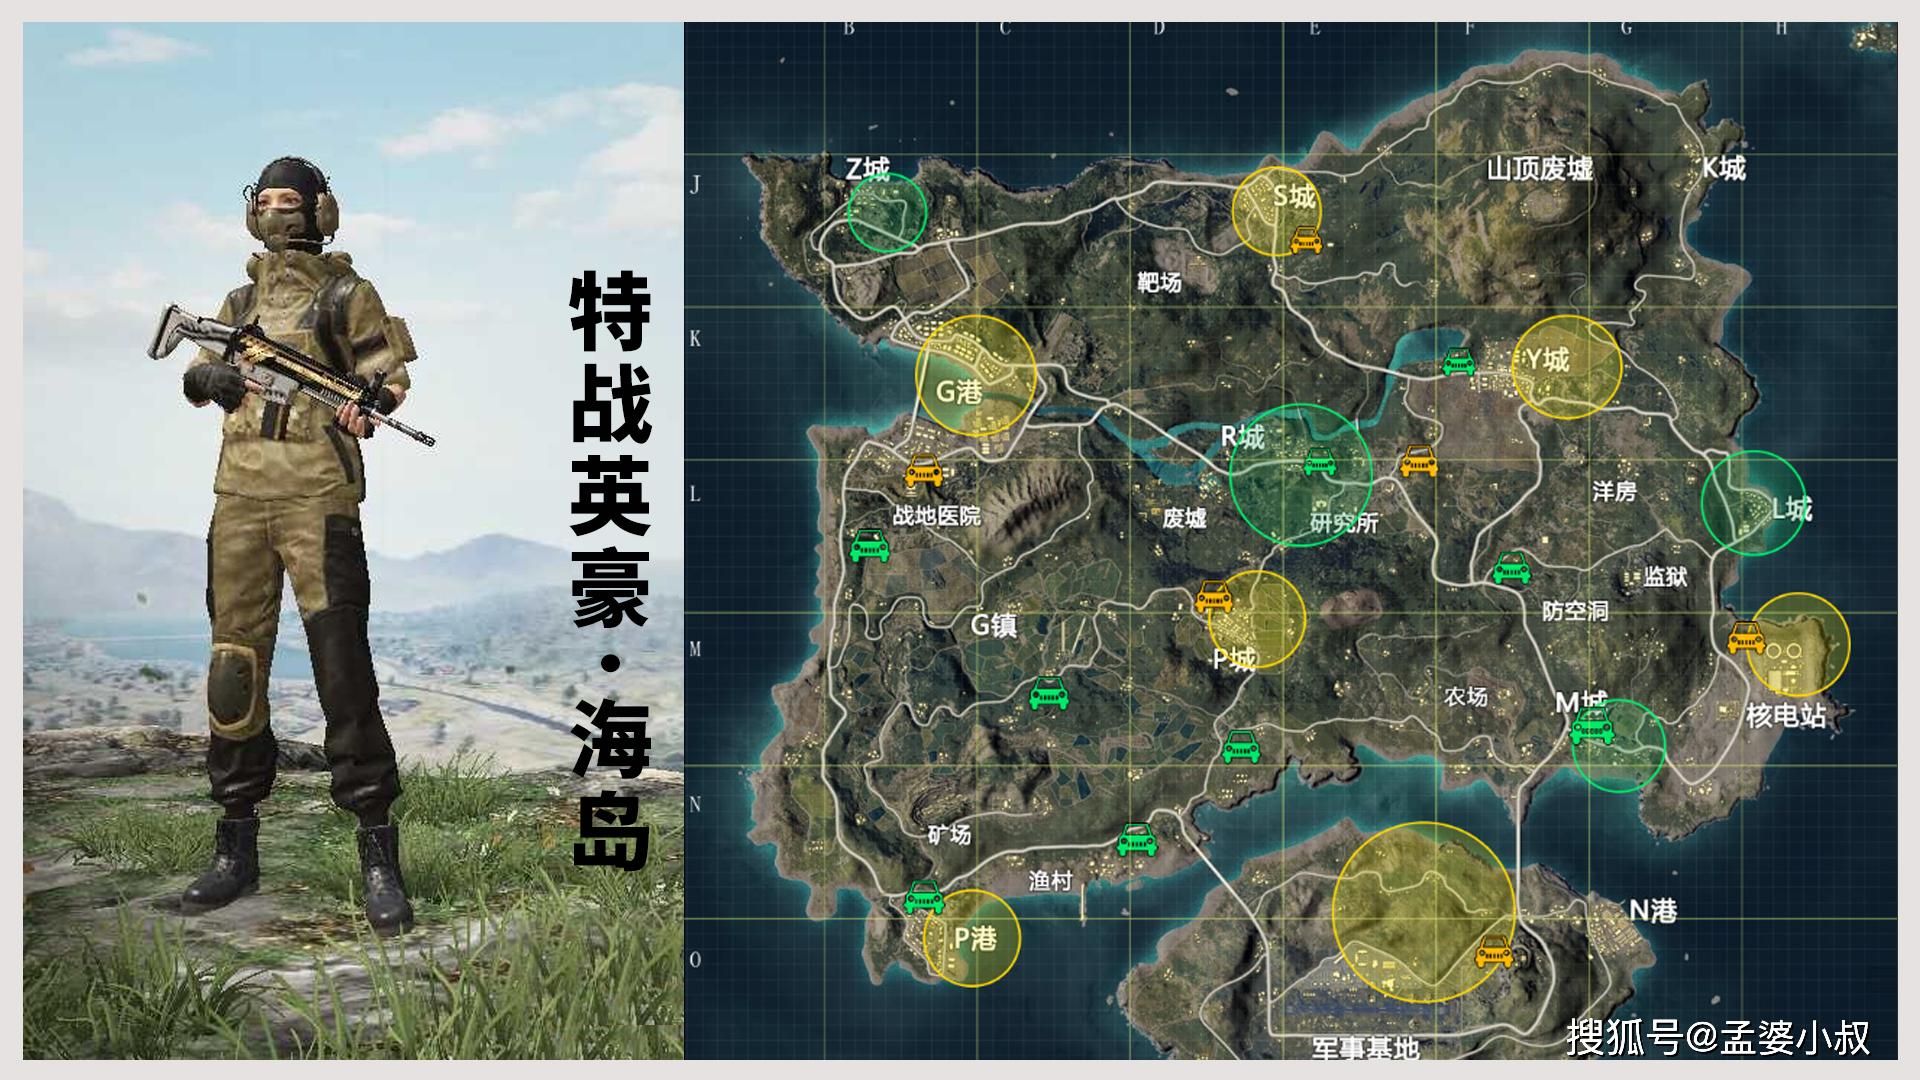 吃鸡海岛地图 清晰图片